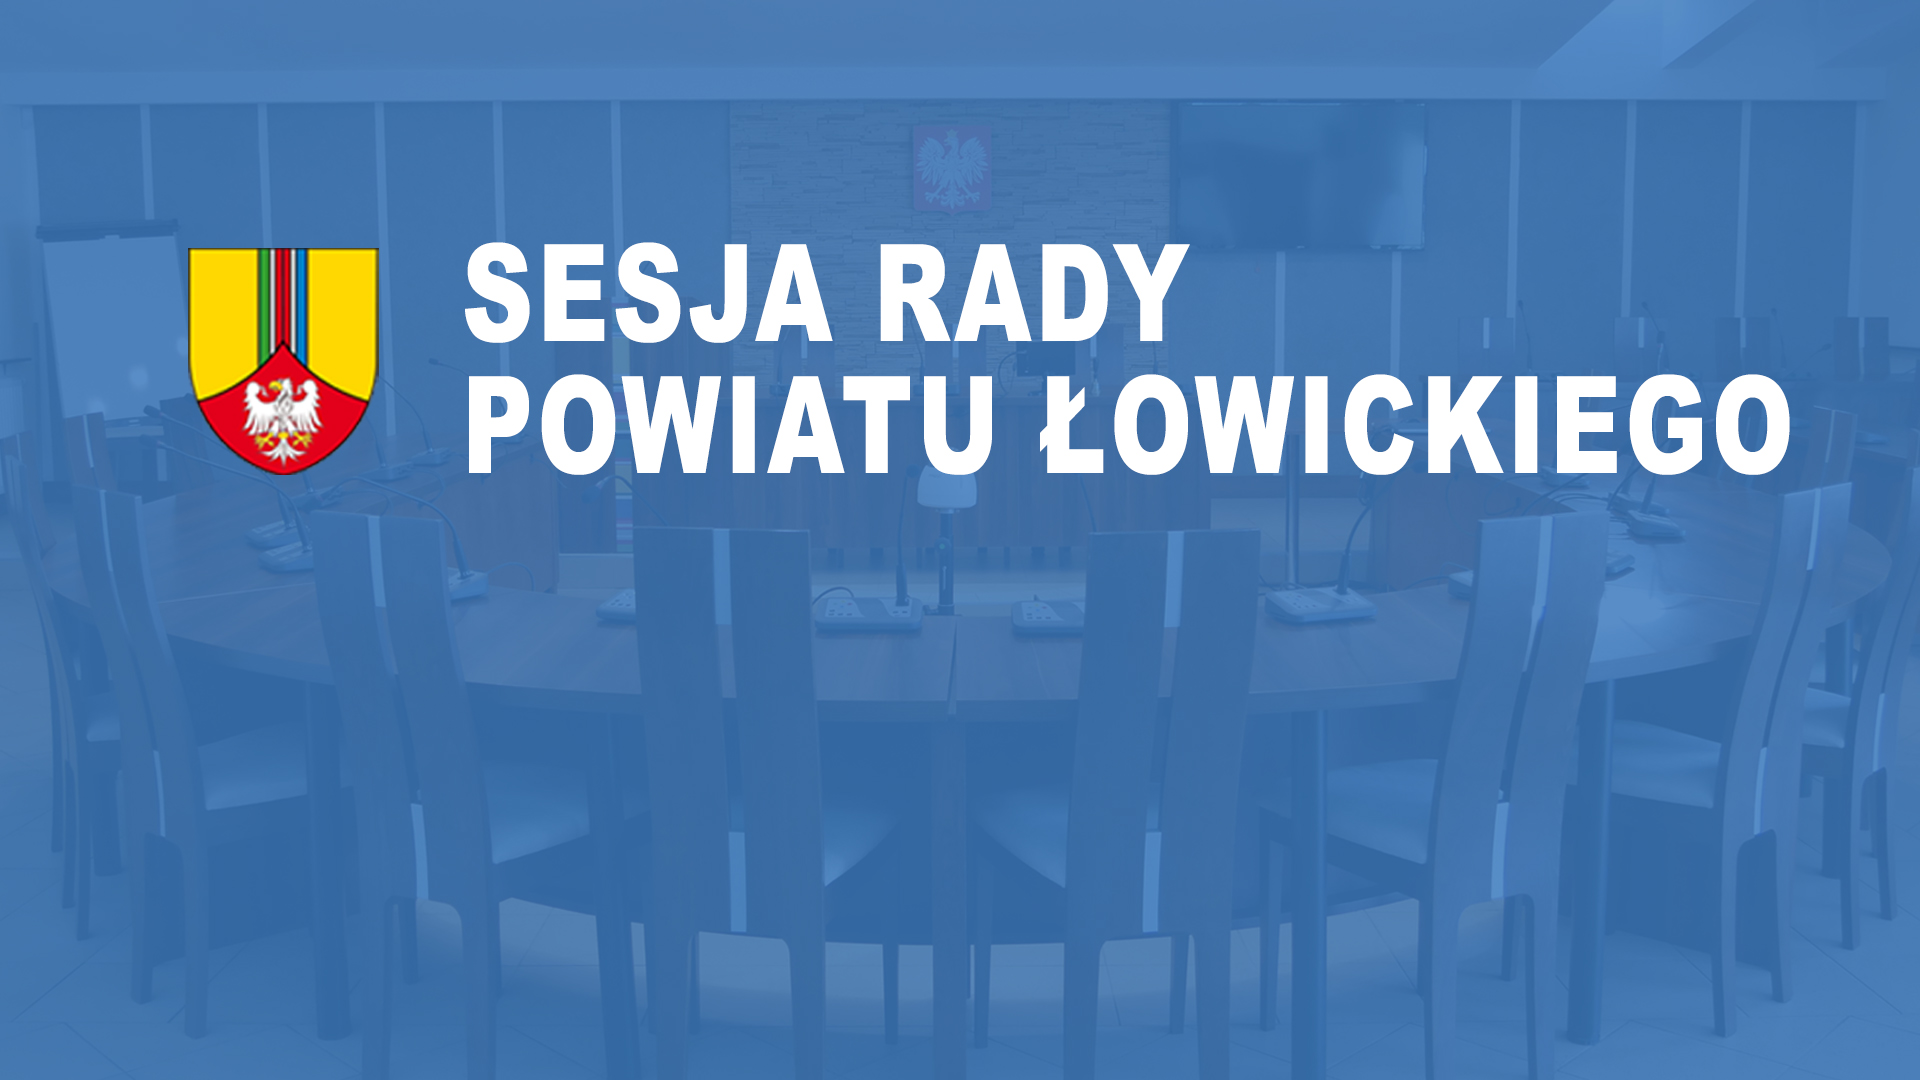 XLII Sesja Rady Powiatu Łowickiego